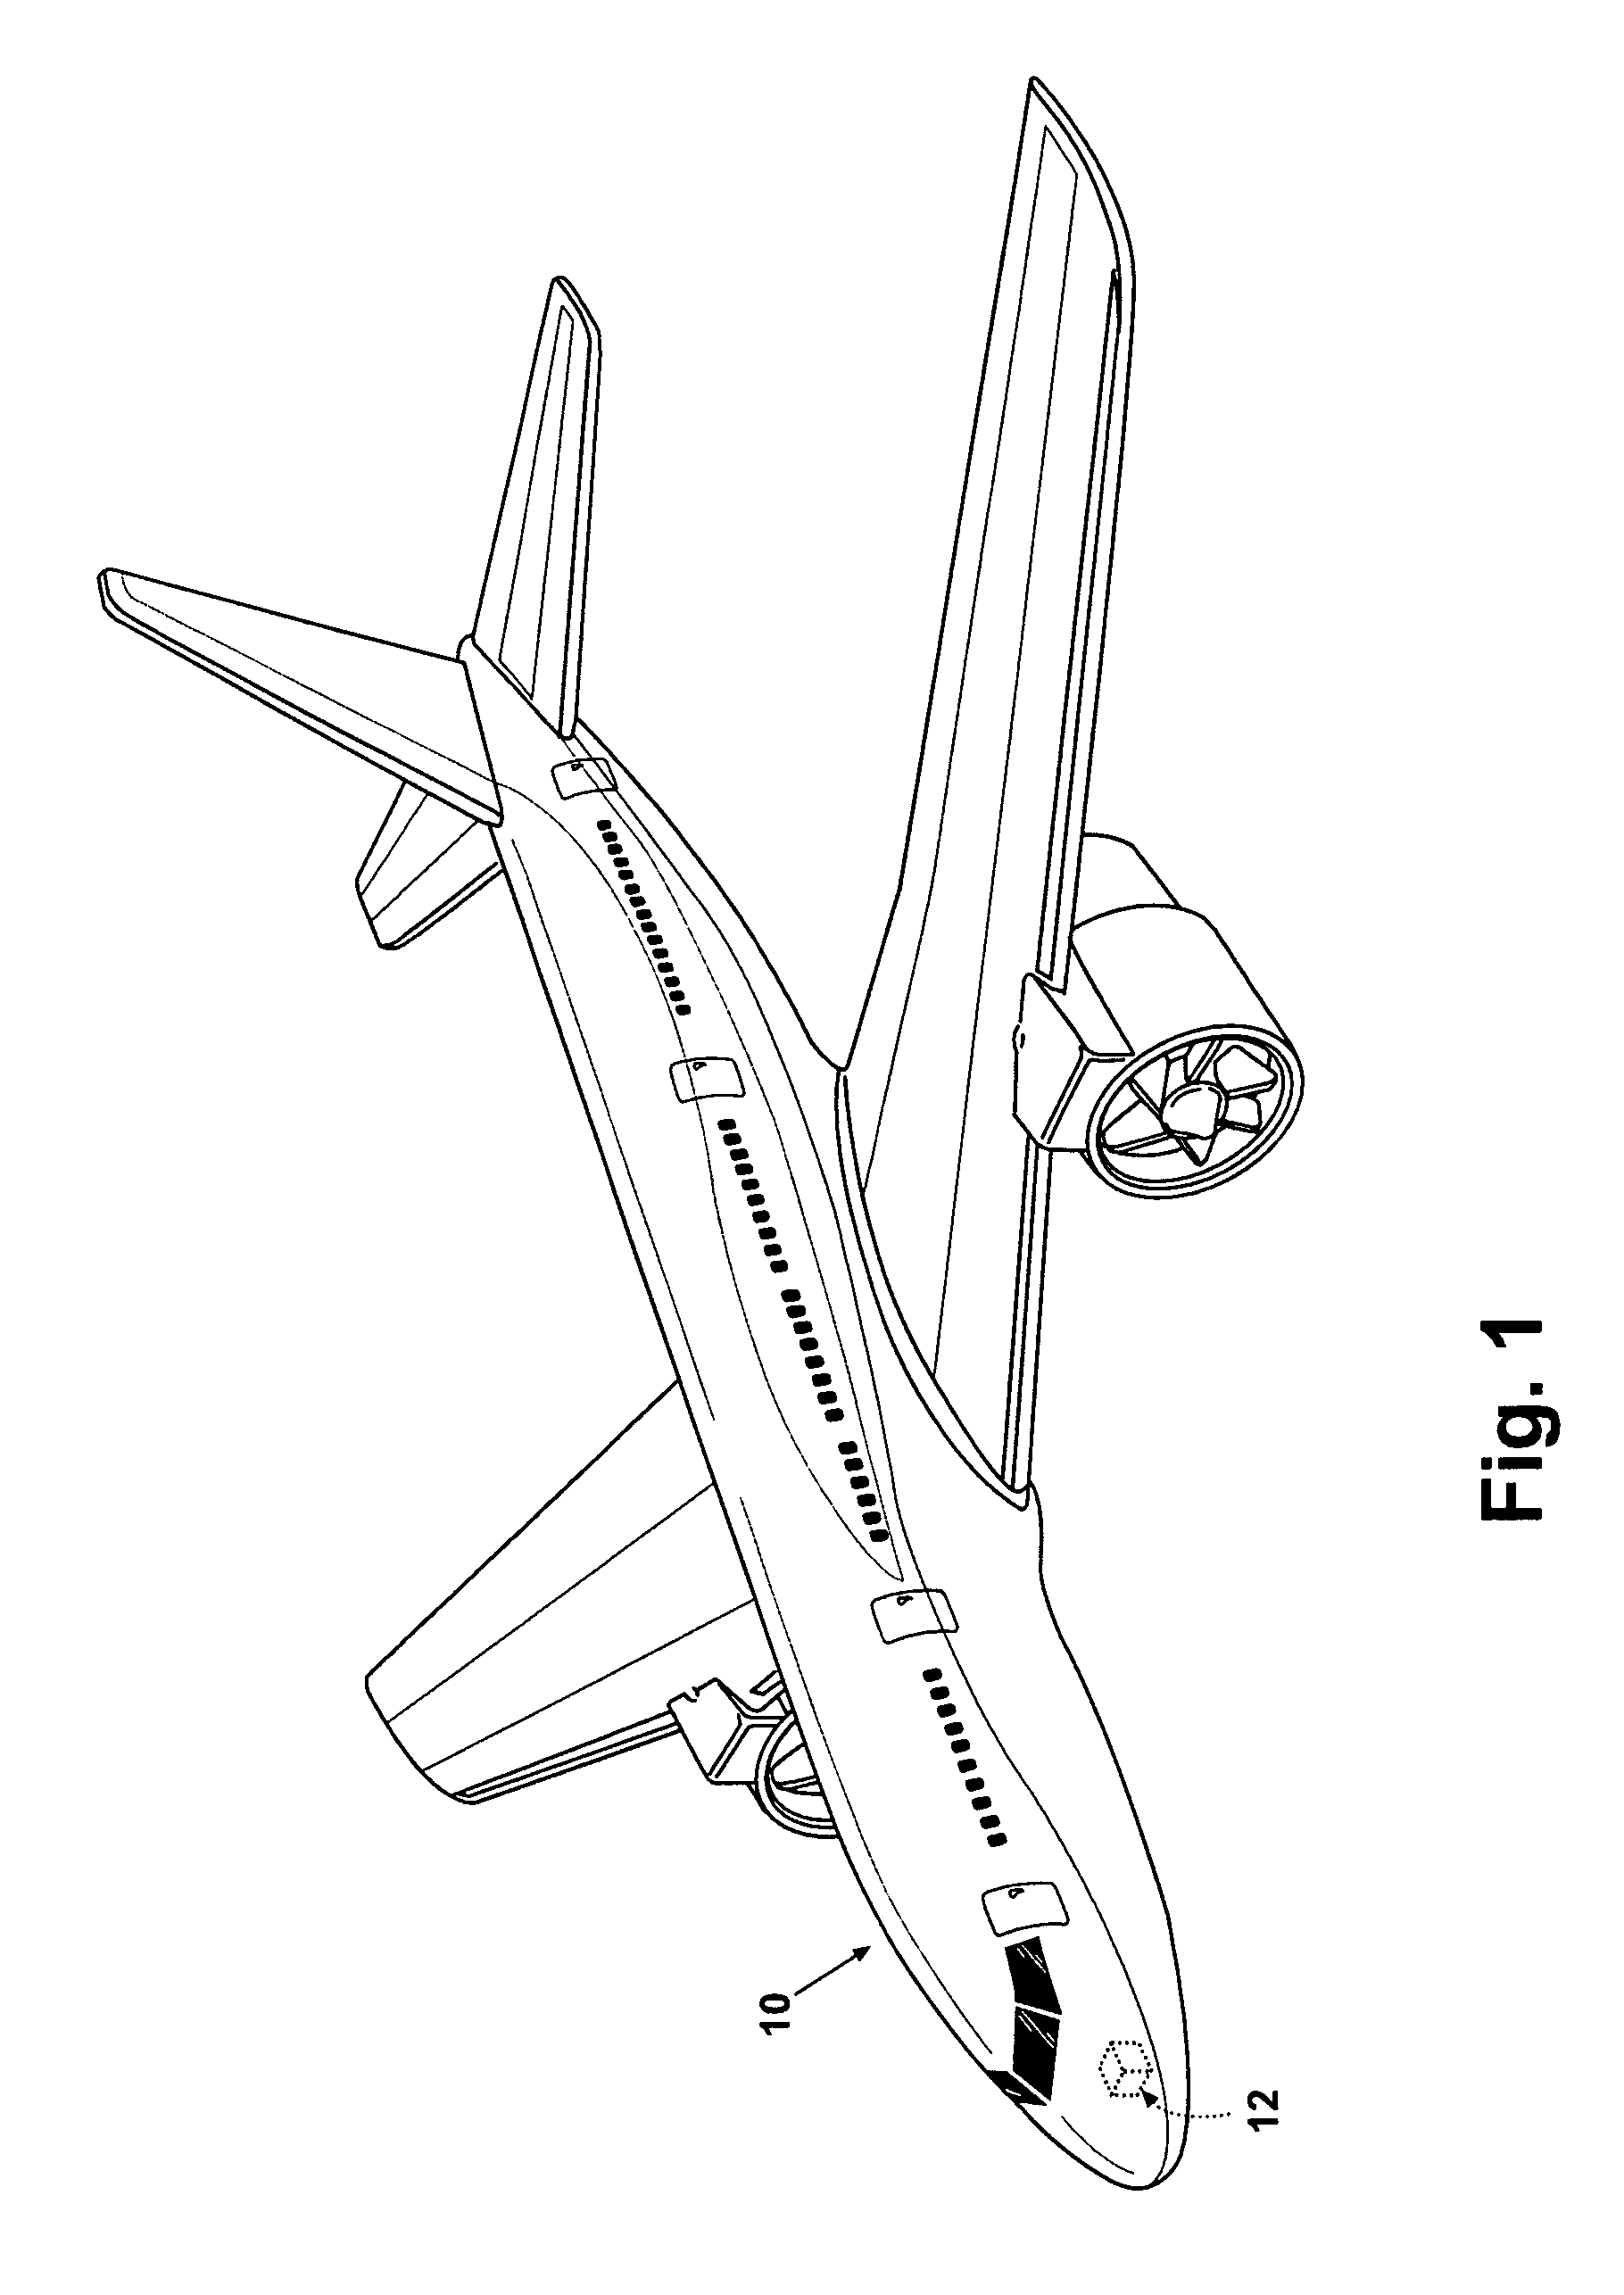 Avionics chassis